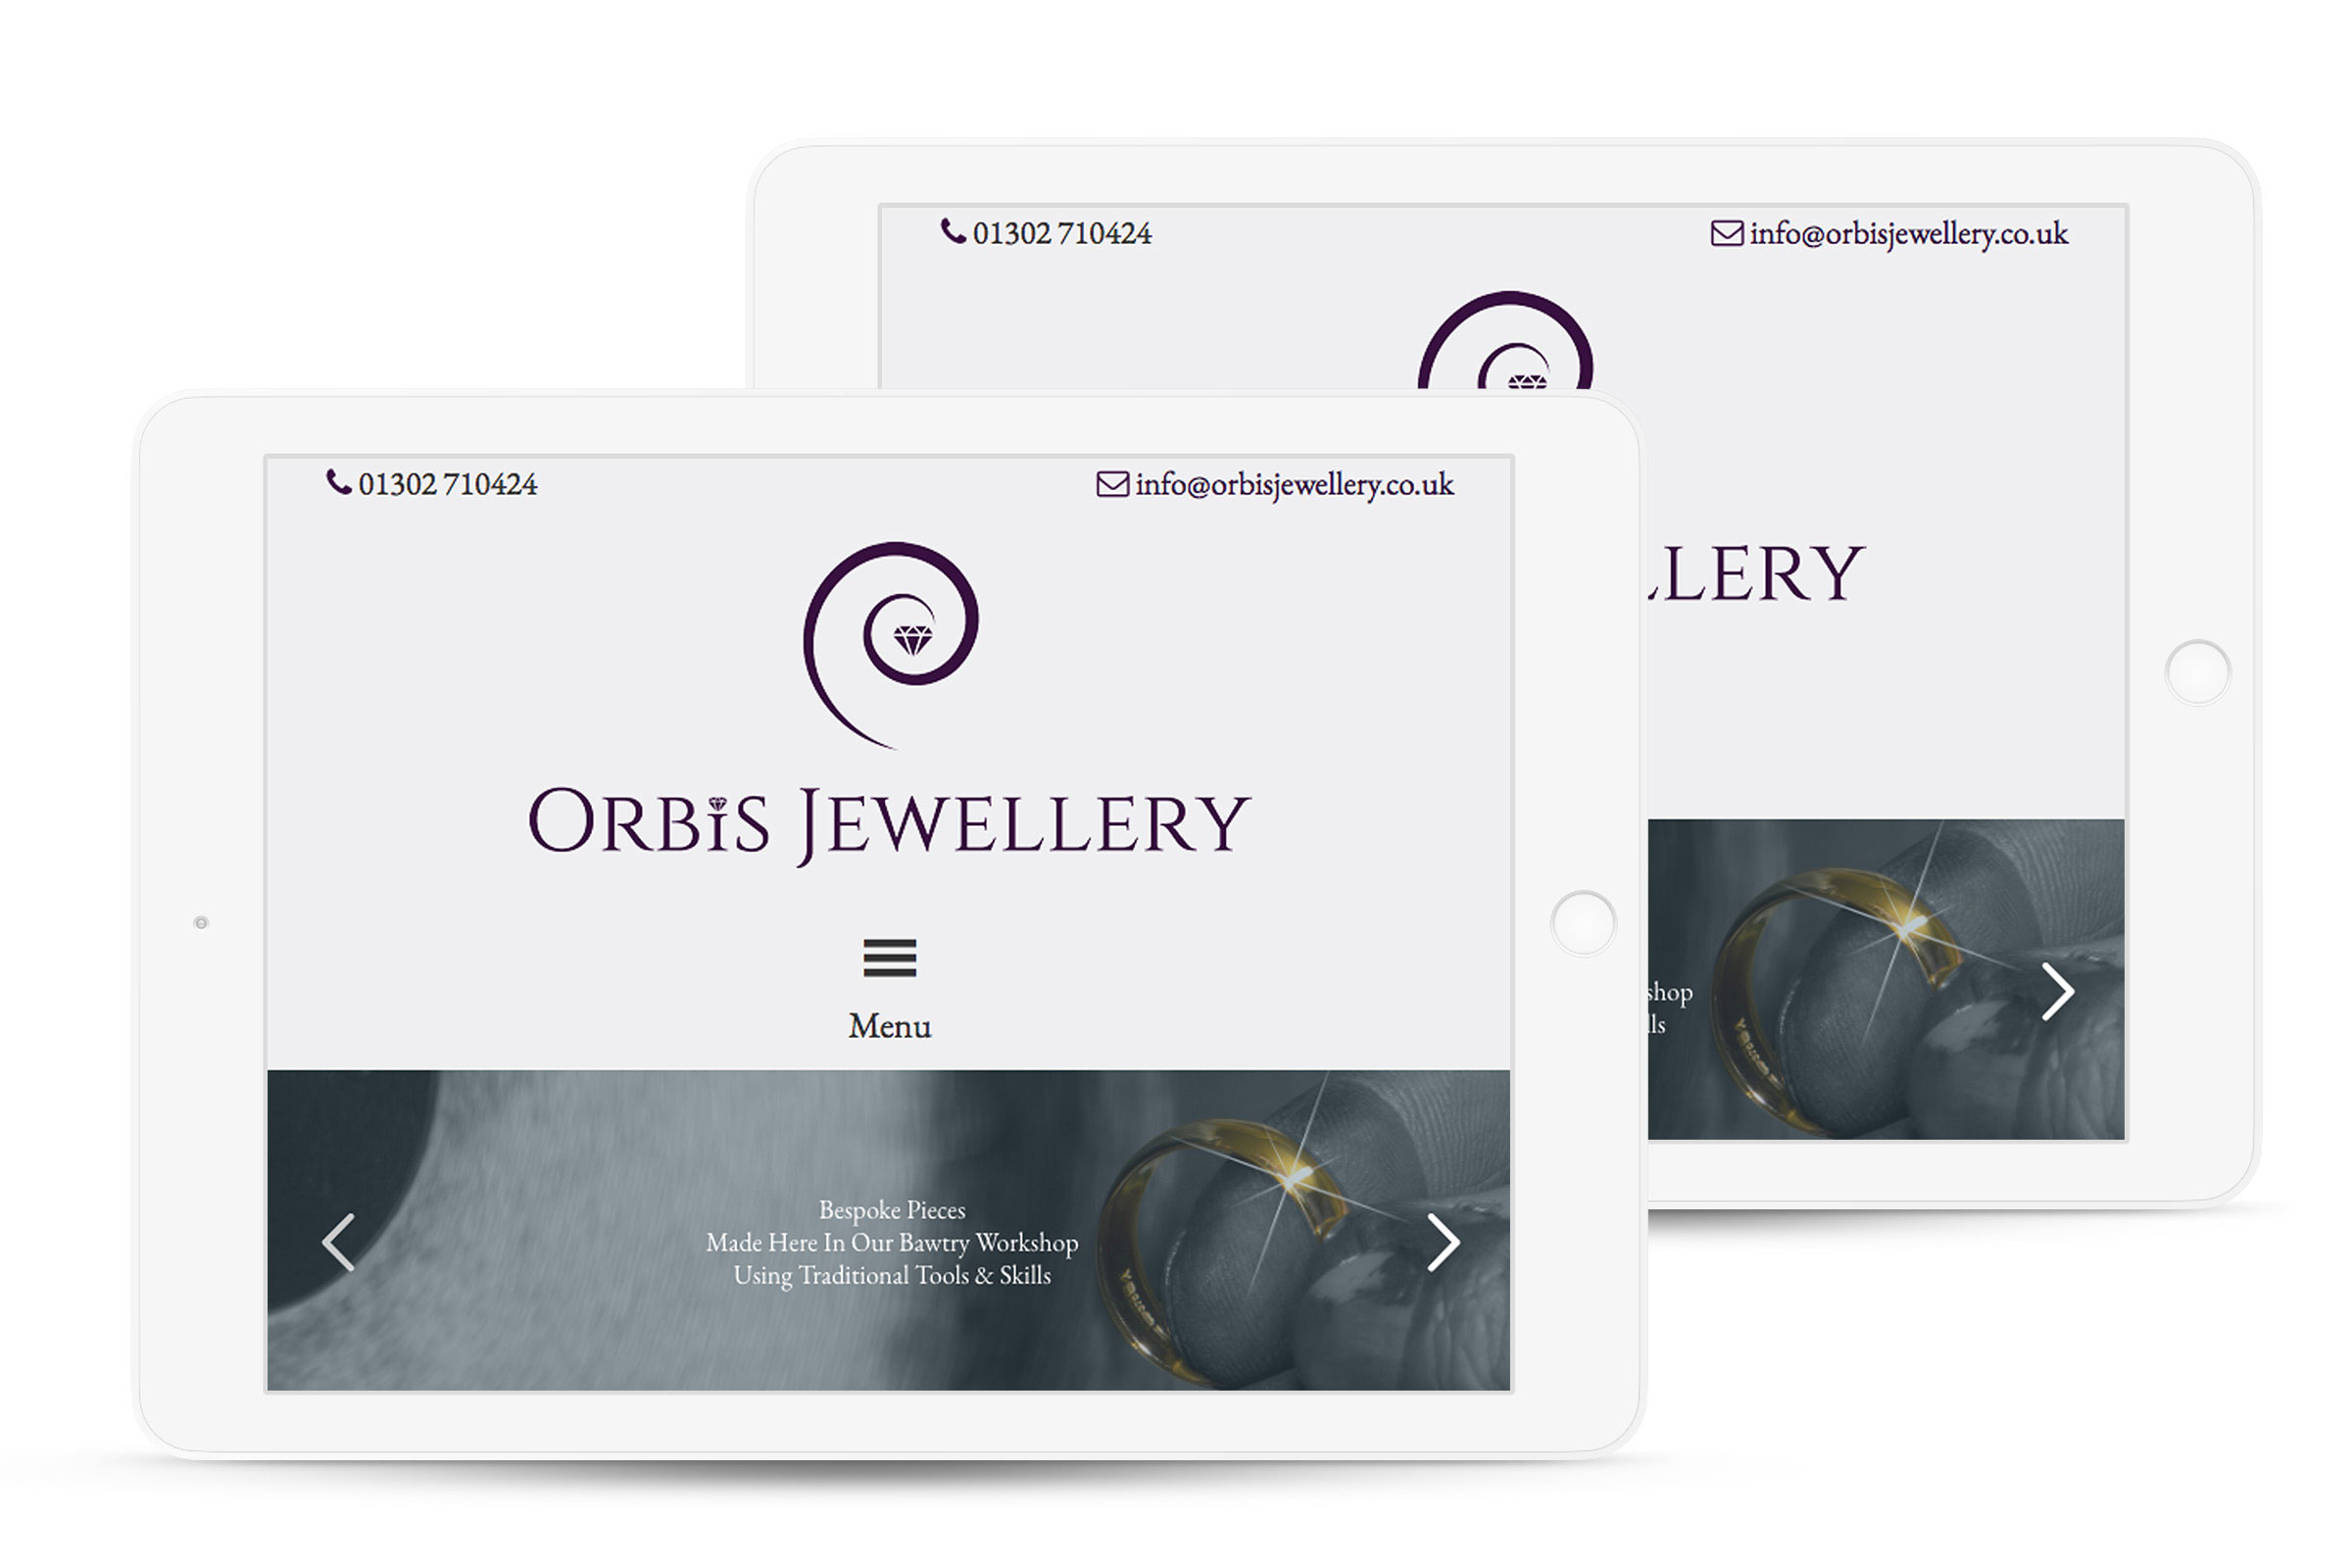 Orbis Jewellery iPad website design